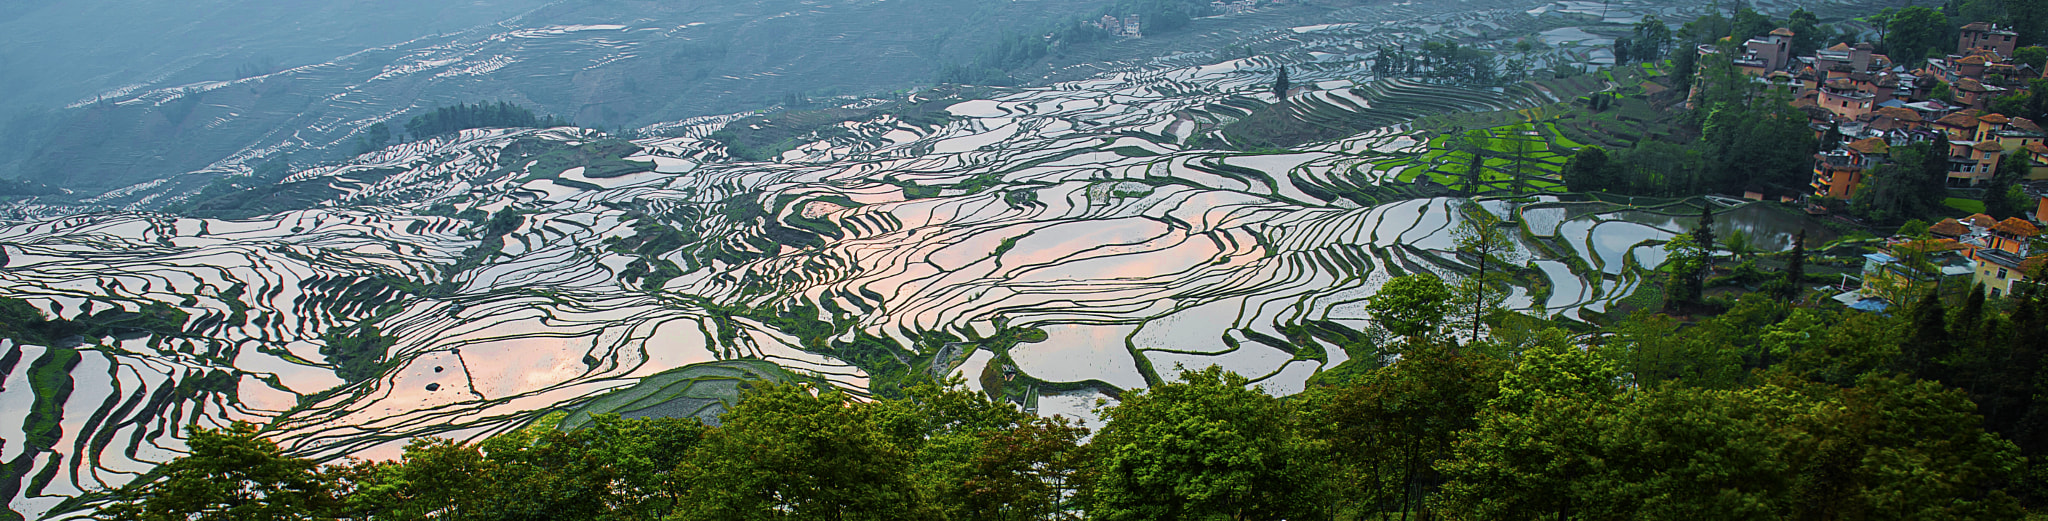 Yunnan, Yuanyang Rice Terrance, China， 云南, 元阳哈尼梯田